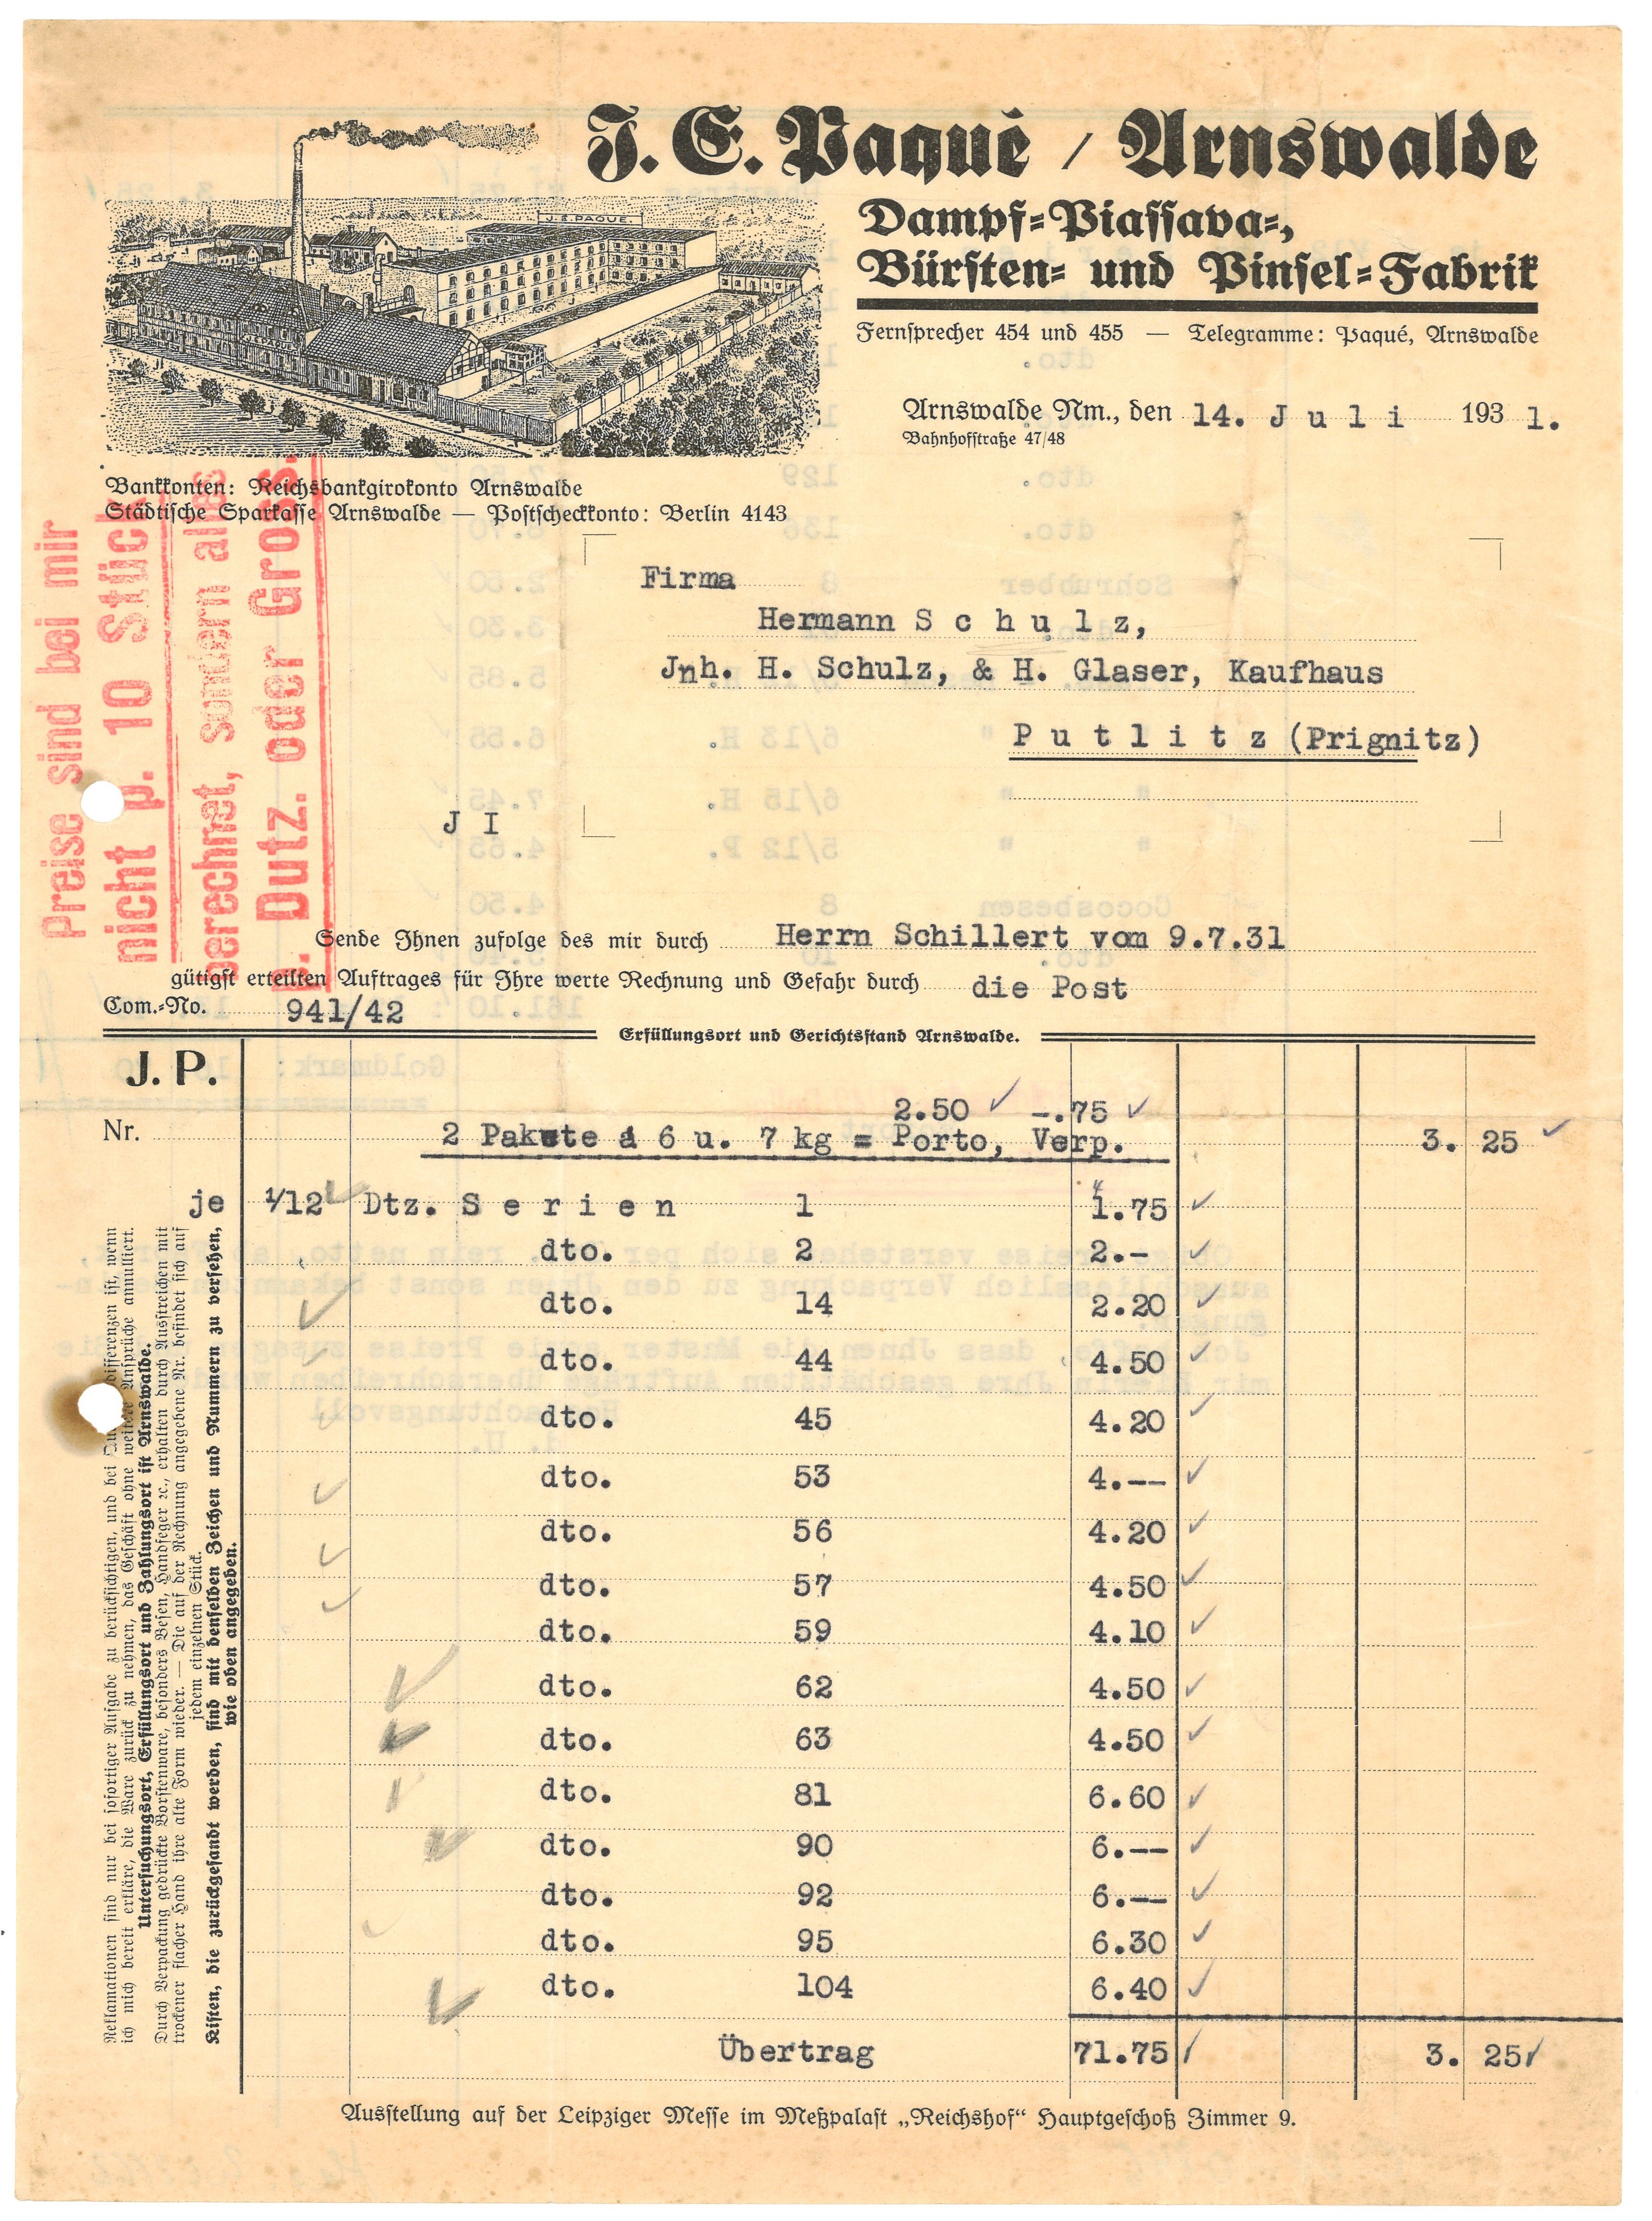 Rechnung der Firma J. E. Paqué in Arnswalde 1931 (Landesgeschichtliche Vereinigung für die Mark Brandenburg e.V., Archiv CC BY)